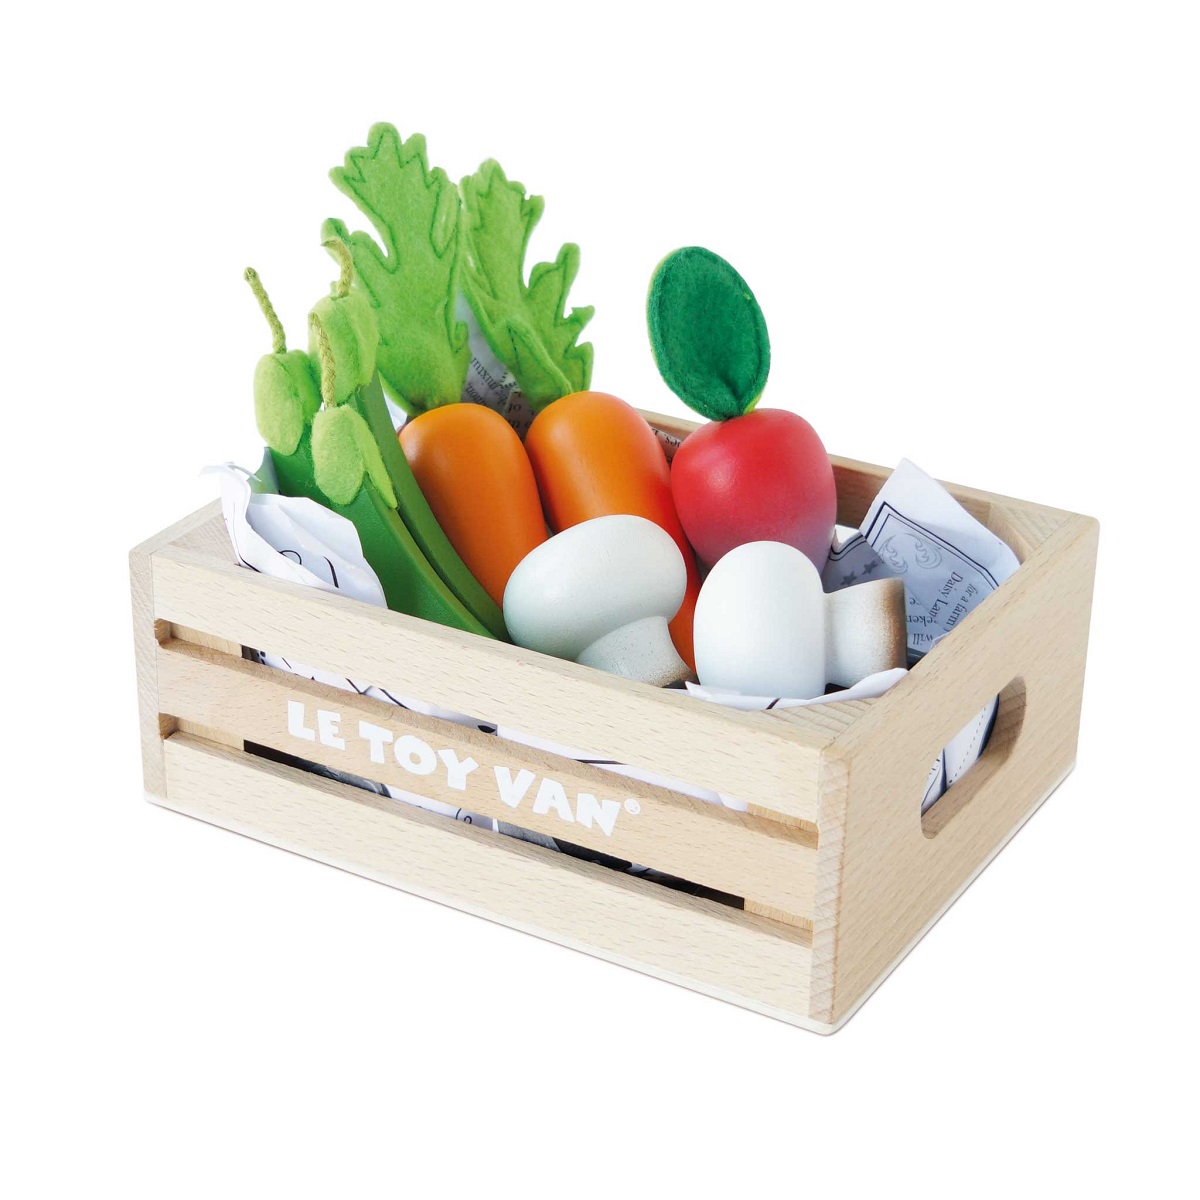 Roleplay - Market Crate - Harvest Vegetables